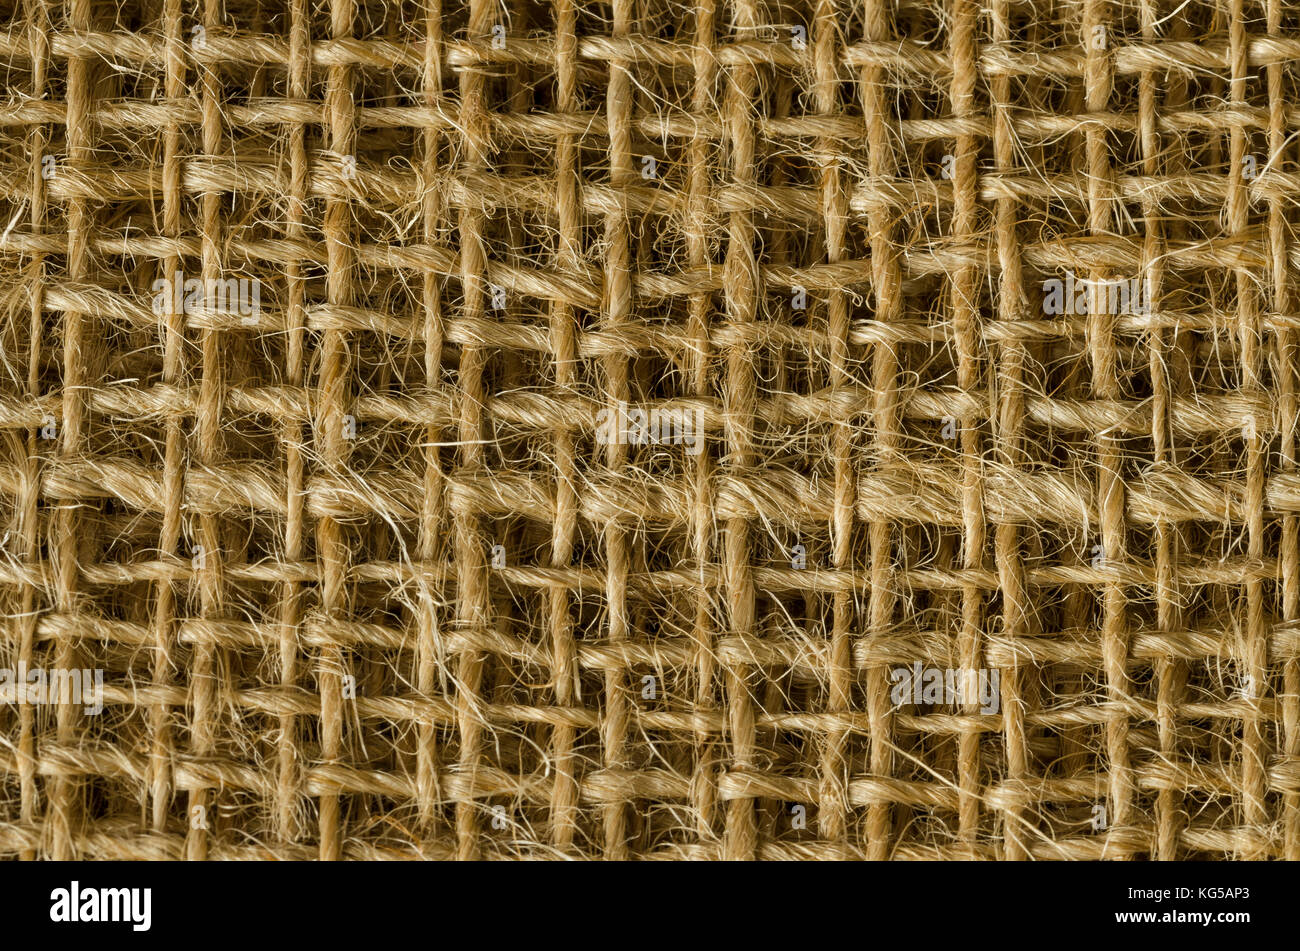 Jutegewebe Schichten von oben. Grobe braun Threads zu grob textile Gewebe, für Taschen verwendet. Auch als raw oder goldene Faser. Foto. Stockfoto